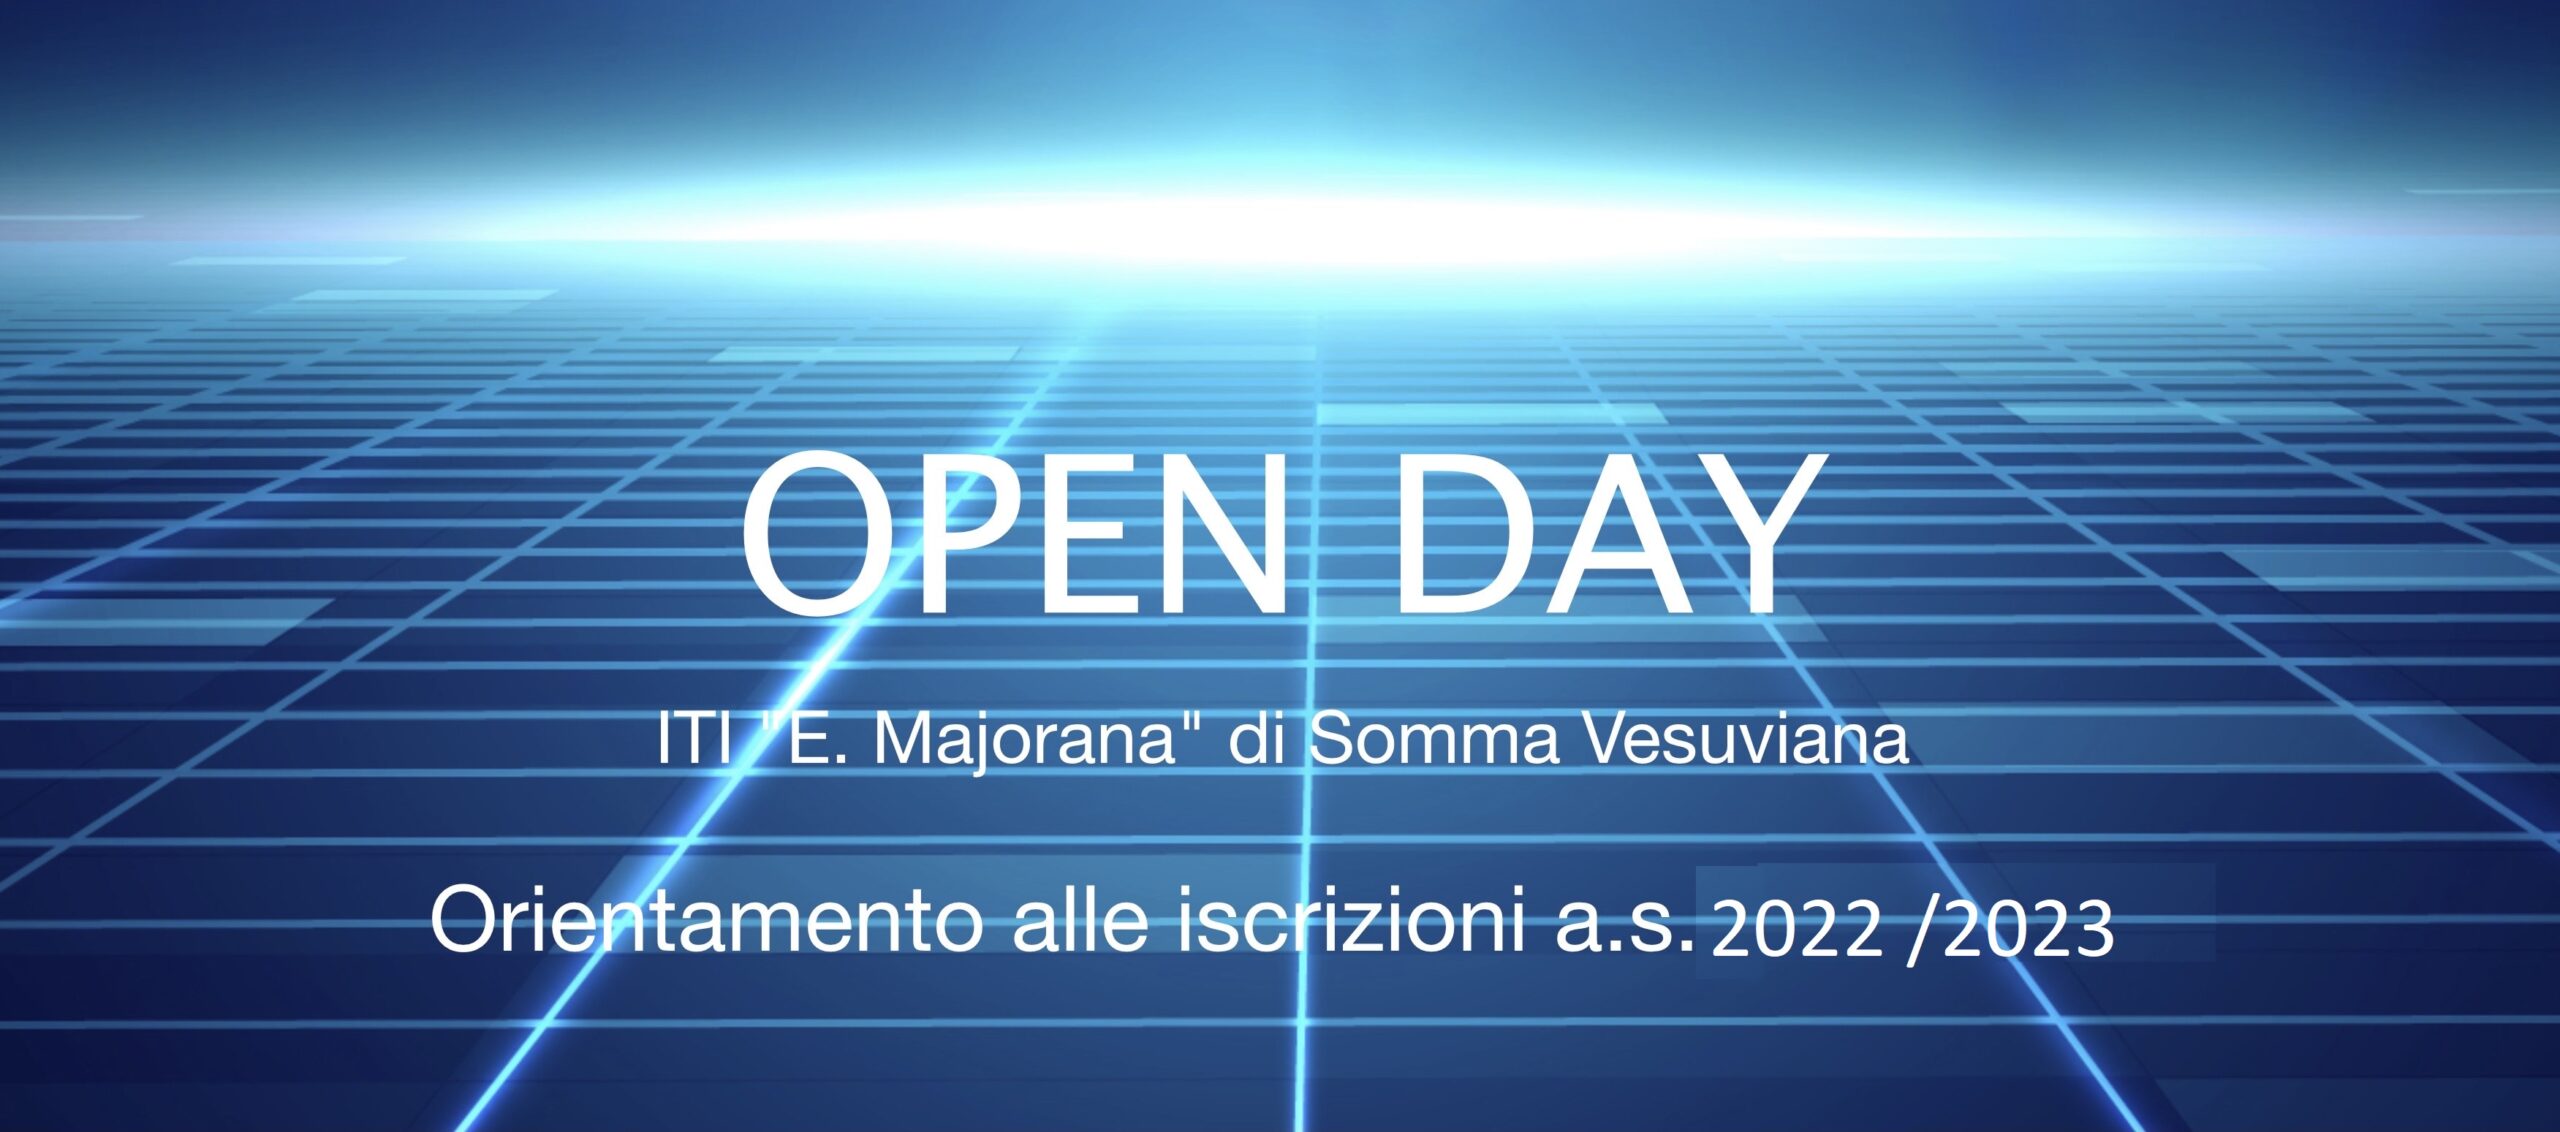 Open Day al Majorana – sabato 22 gennaio